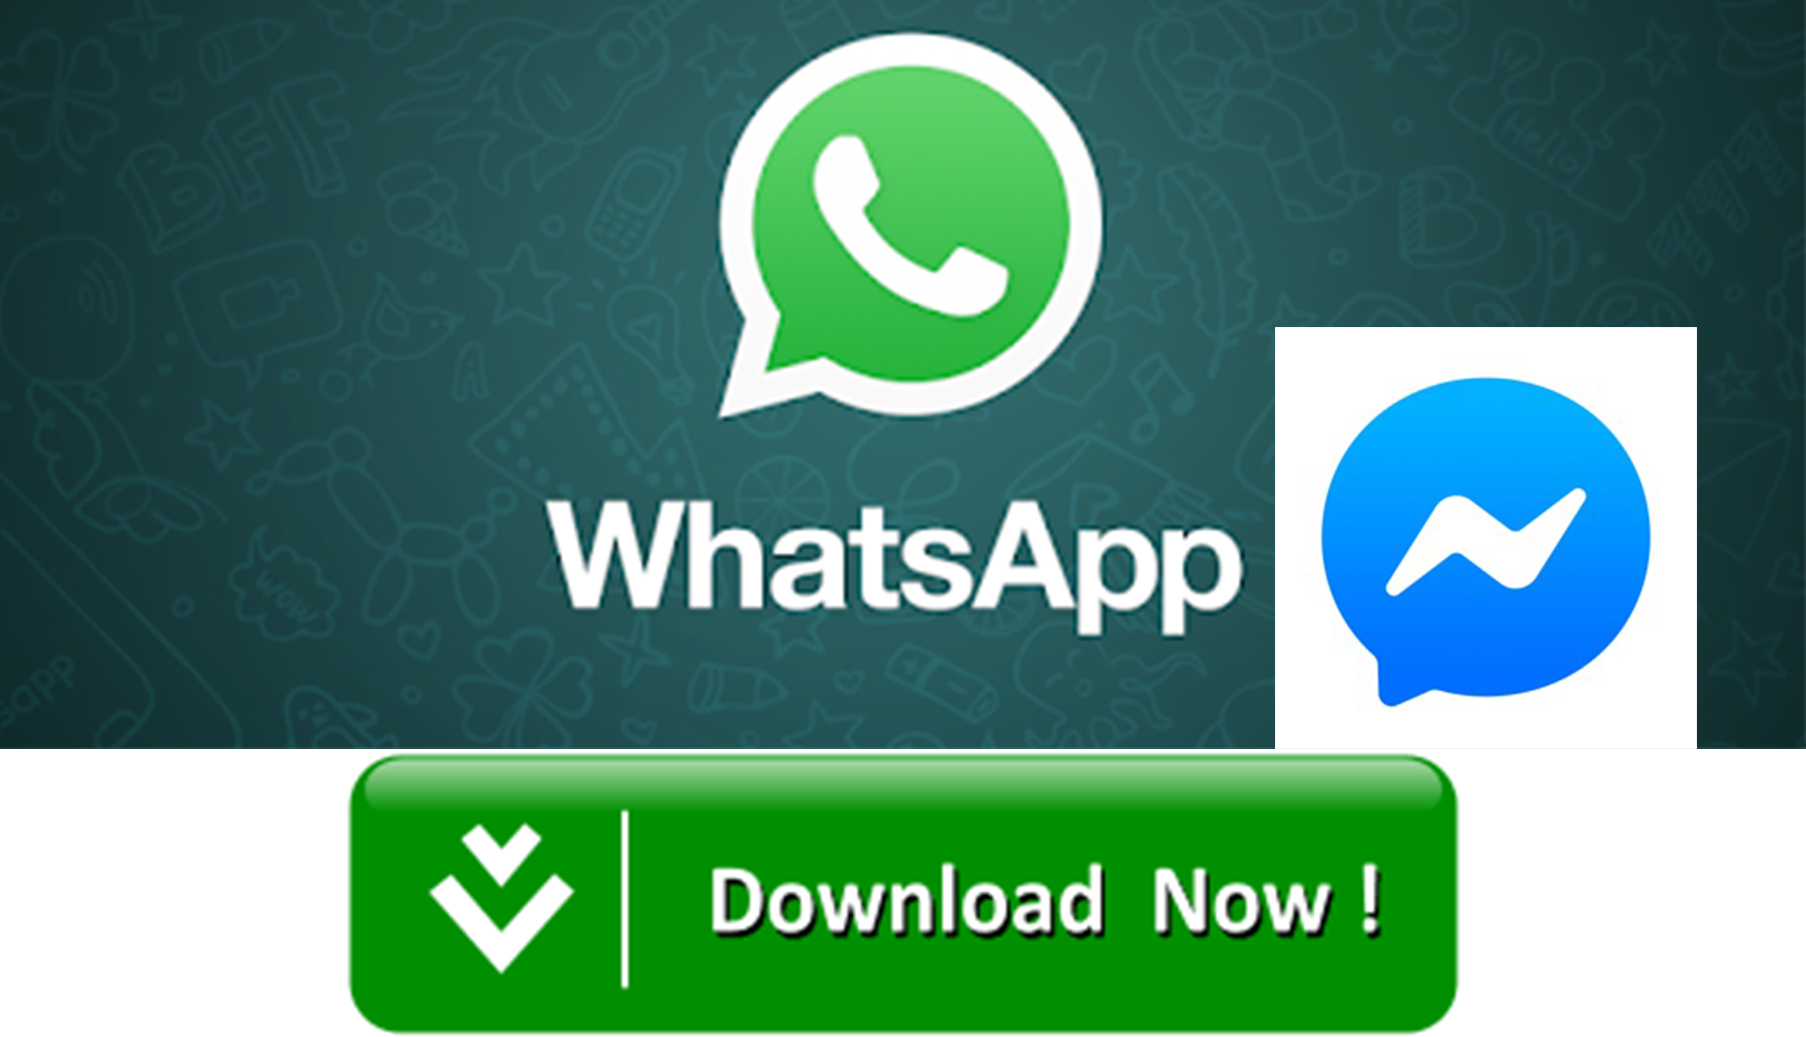 whatsapp desktop app windows 7